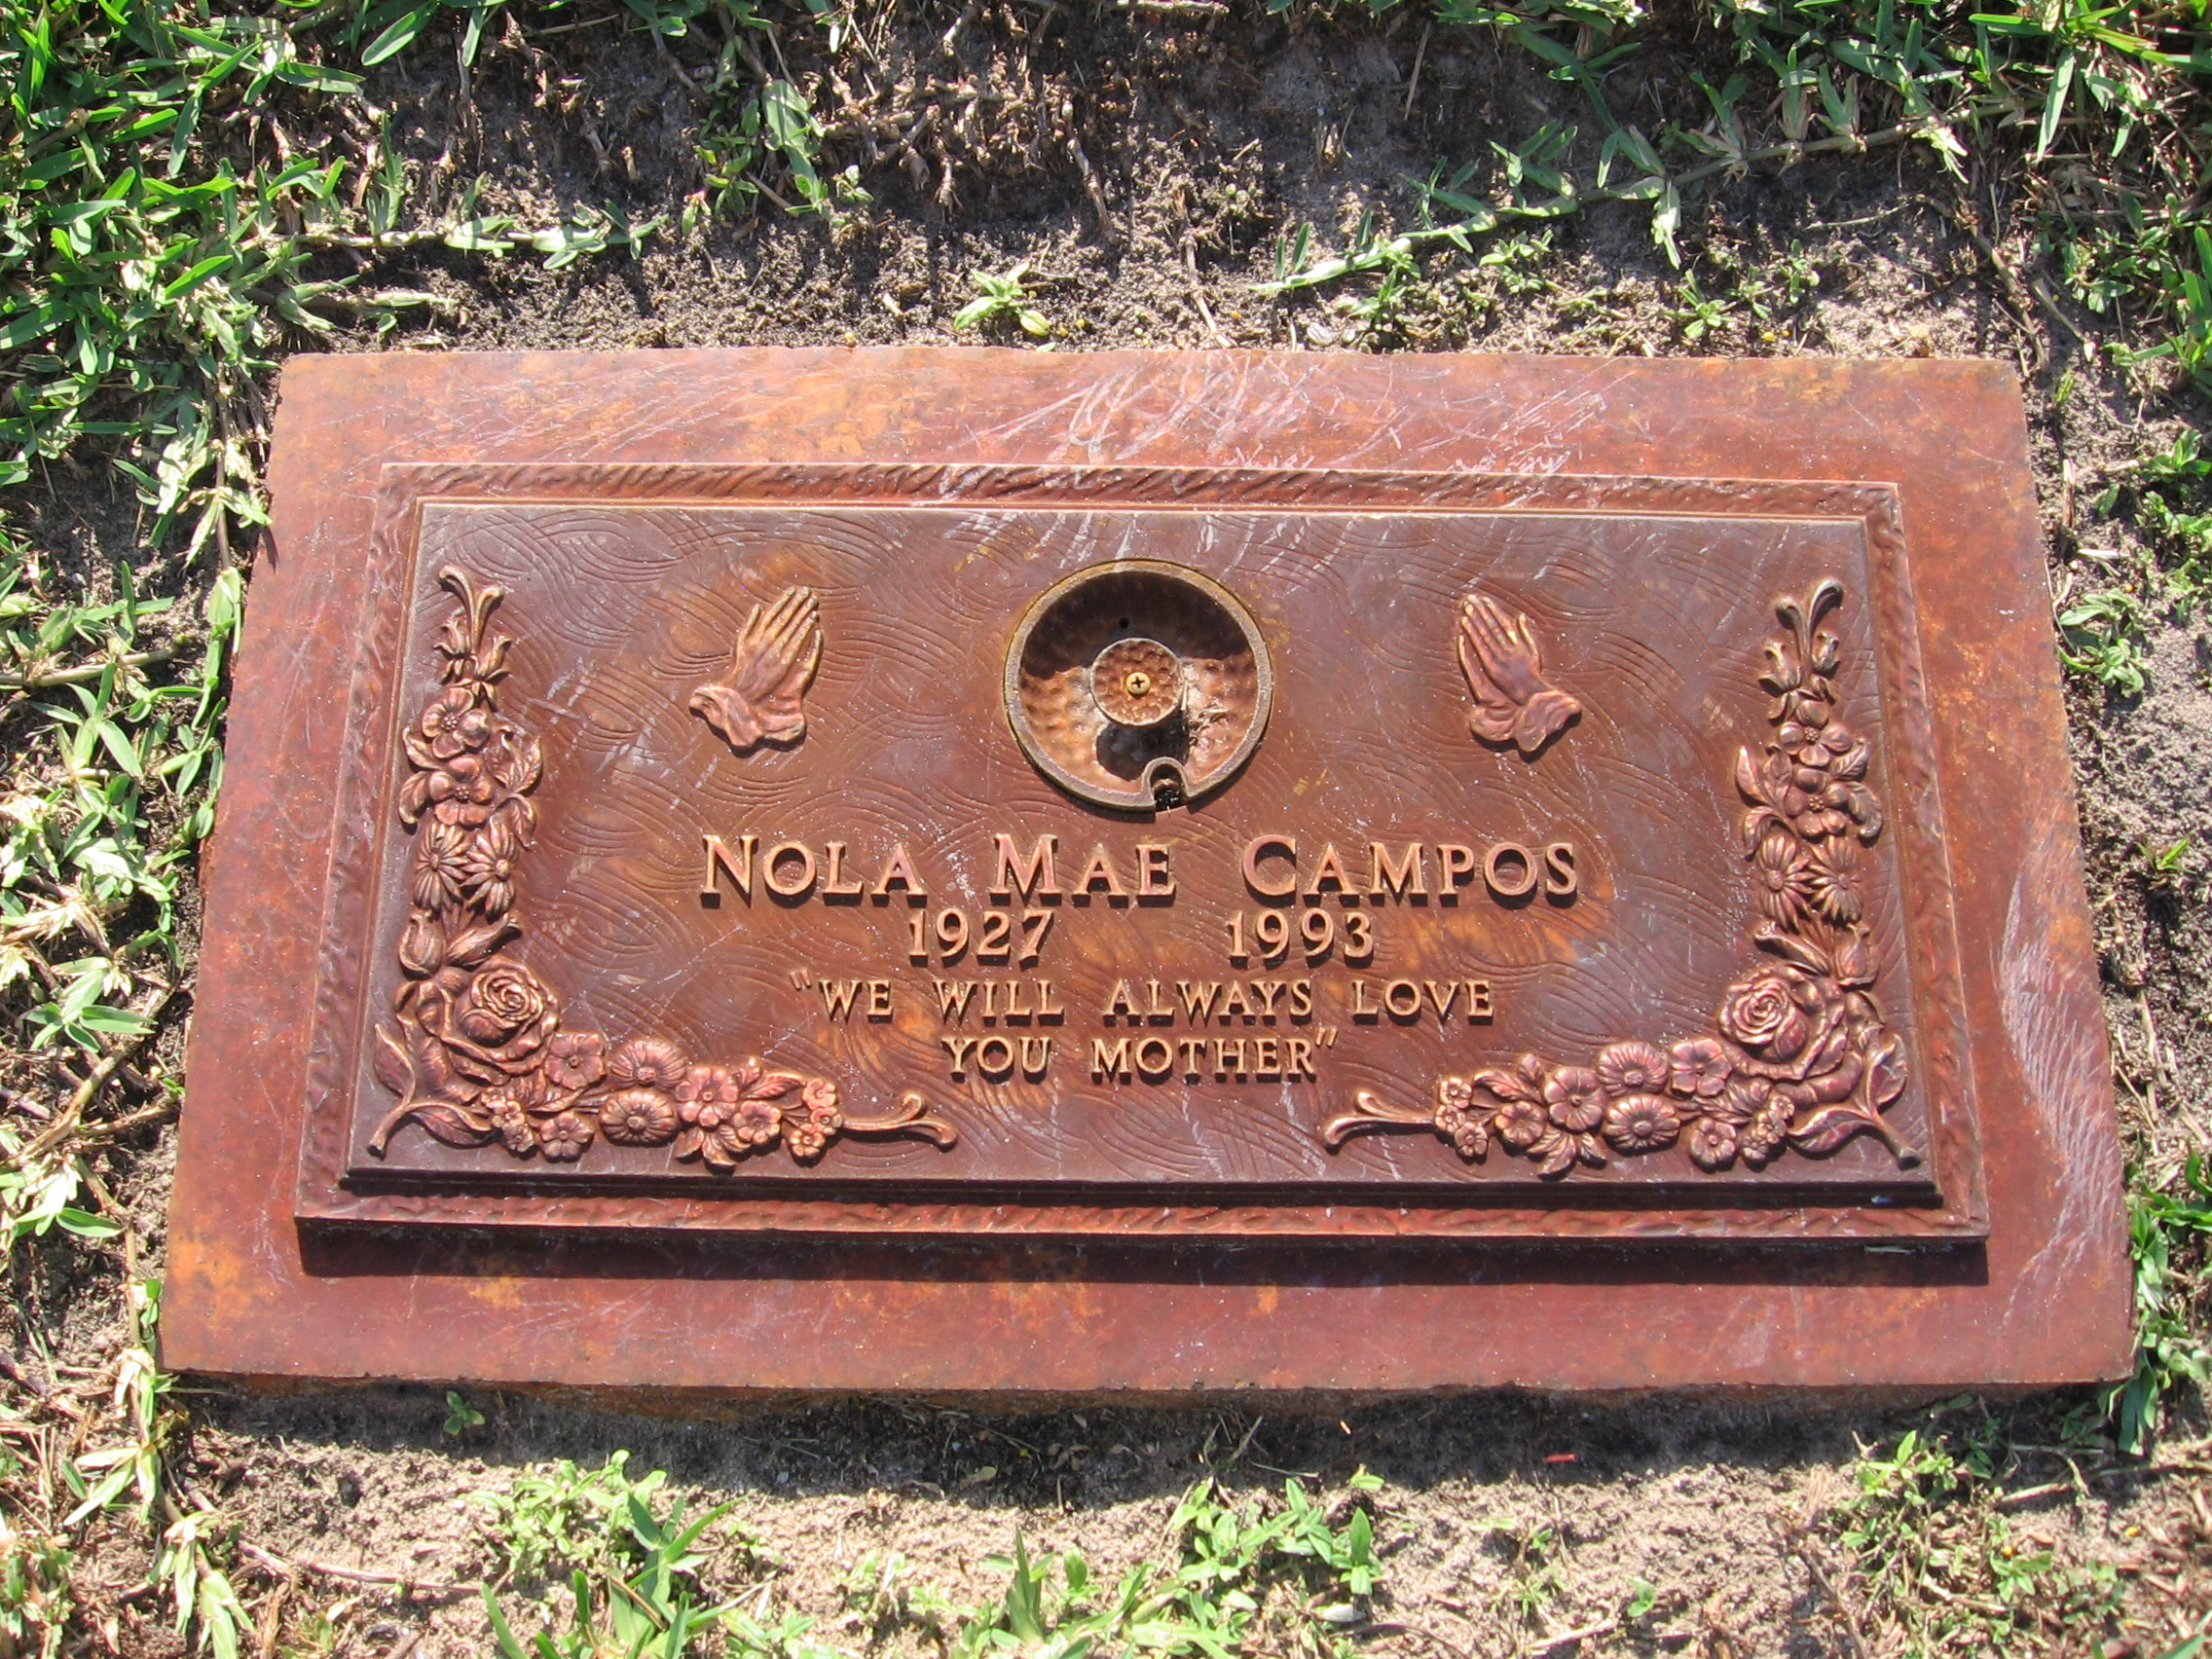 Nola Mae Campos